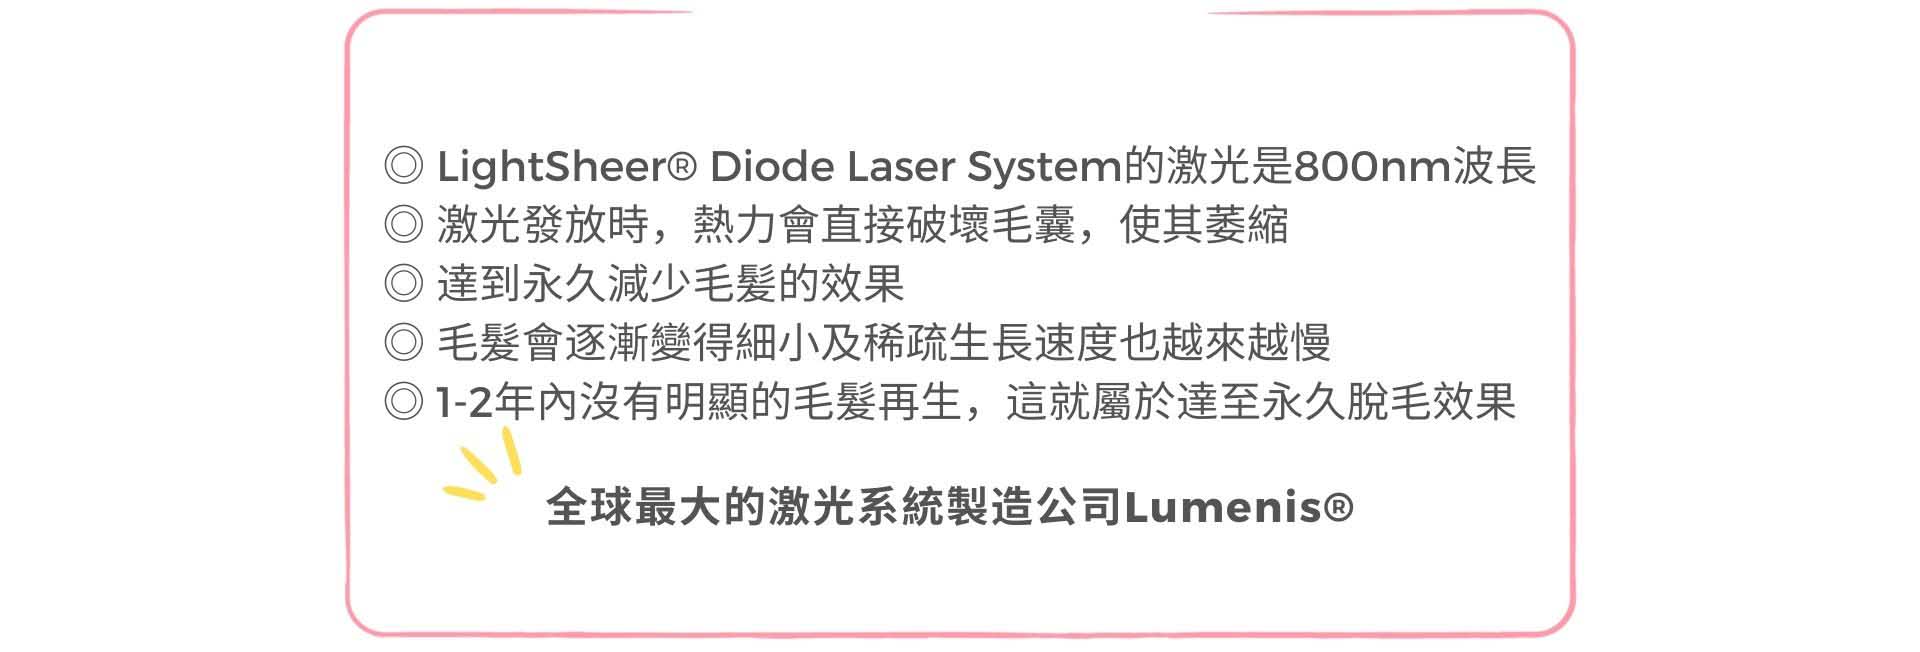 全球最大的激光系統製造公司Lumenis®：LightSheer® Diode Laser System的激光是800nm波長，激光發放時，熱力會直接進入破壞毛囊，使其萎縮，達到永久減少毛髪的效果，亦能改善毛髪倒生的地方。每次激光脫毛後，毛髮會逐漸變得細小及稀疏生長速度也越來越慢,到最後便會失去再生能力。如1-2年內沒有明顯的毛髮再生，這就屬於達至永久脫毛效果。